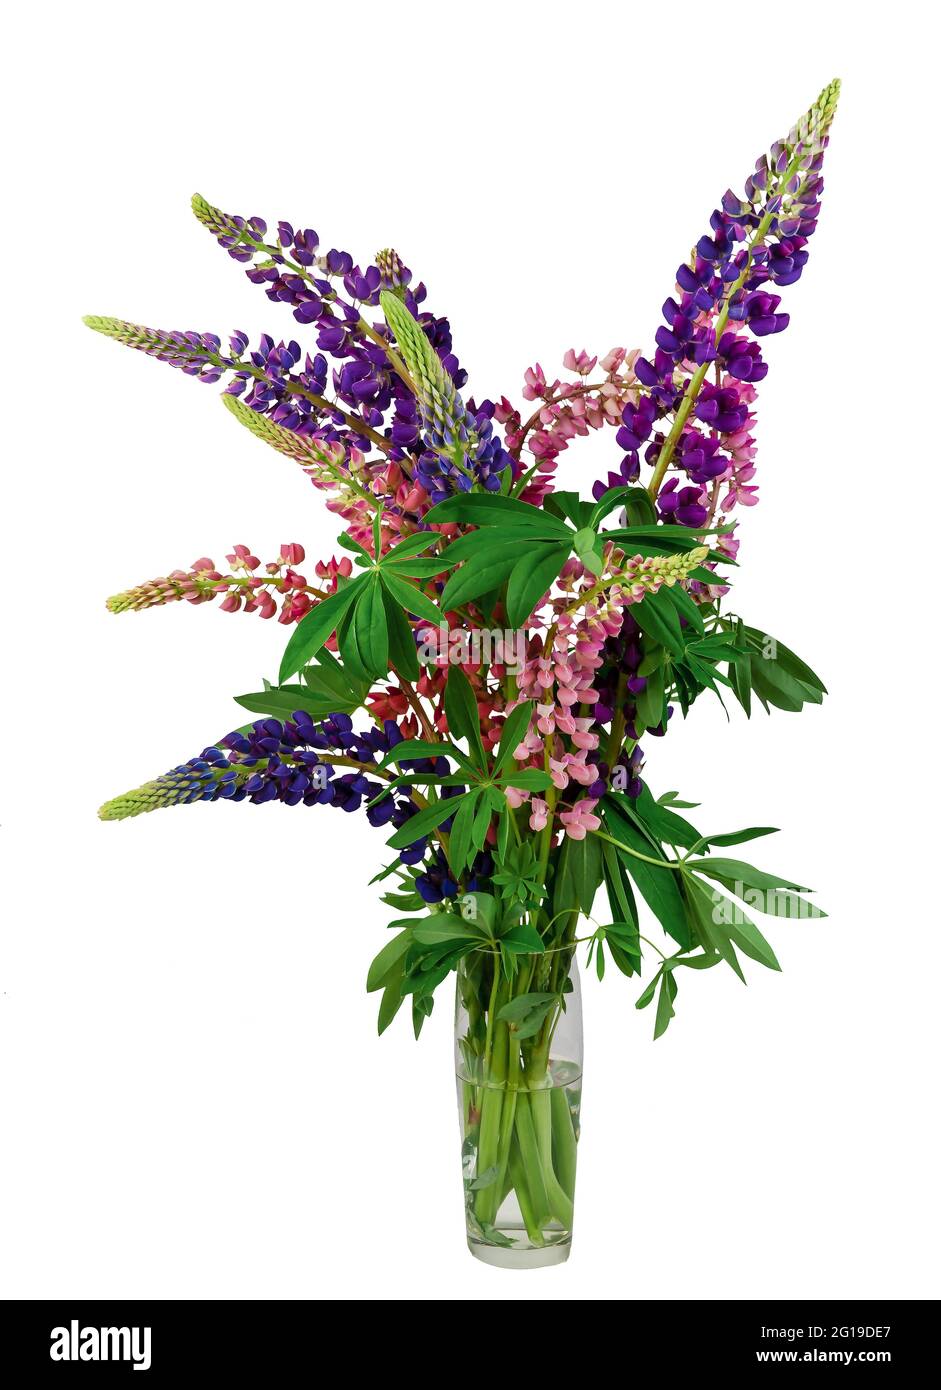 Bouquet de lupins isolé sur fond blanc. Fleurs lupin rose et violet dans un vase. Fleurs sauvages d'été. Lupins de différentes couleurs. Banque D'Images